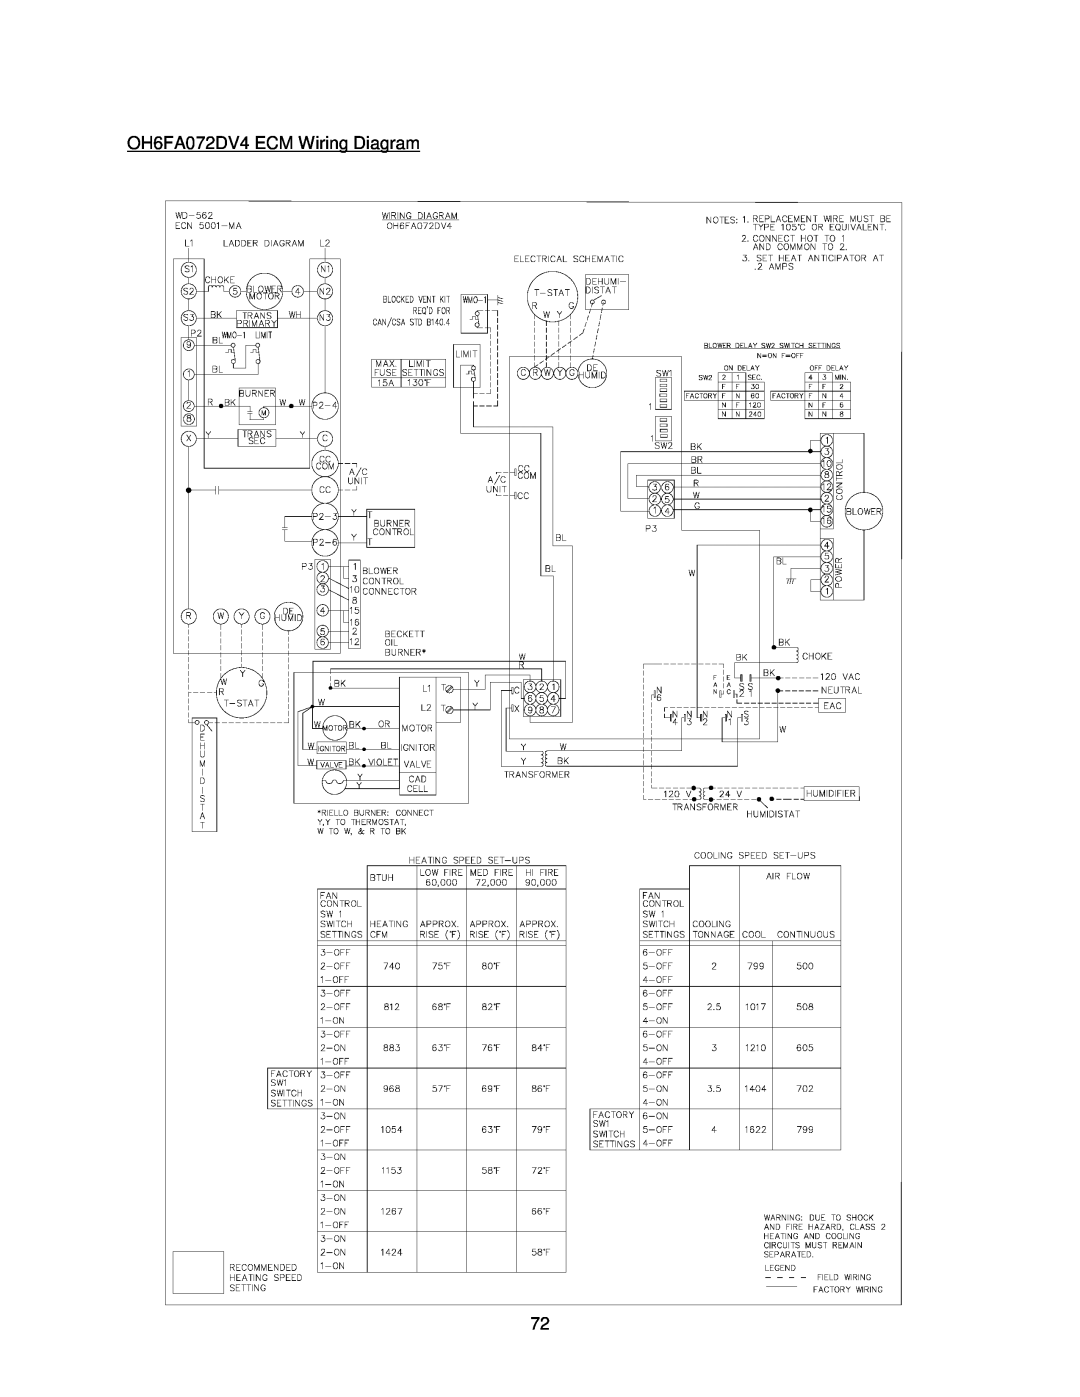 Thermo Products OH8FA119D60B, OH8FA119DV5R, OH8FA119D60R, OH6FA072D48B, OH6FA072D48N OH6FA072DV4 ECM Wiring Diagram 